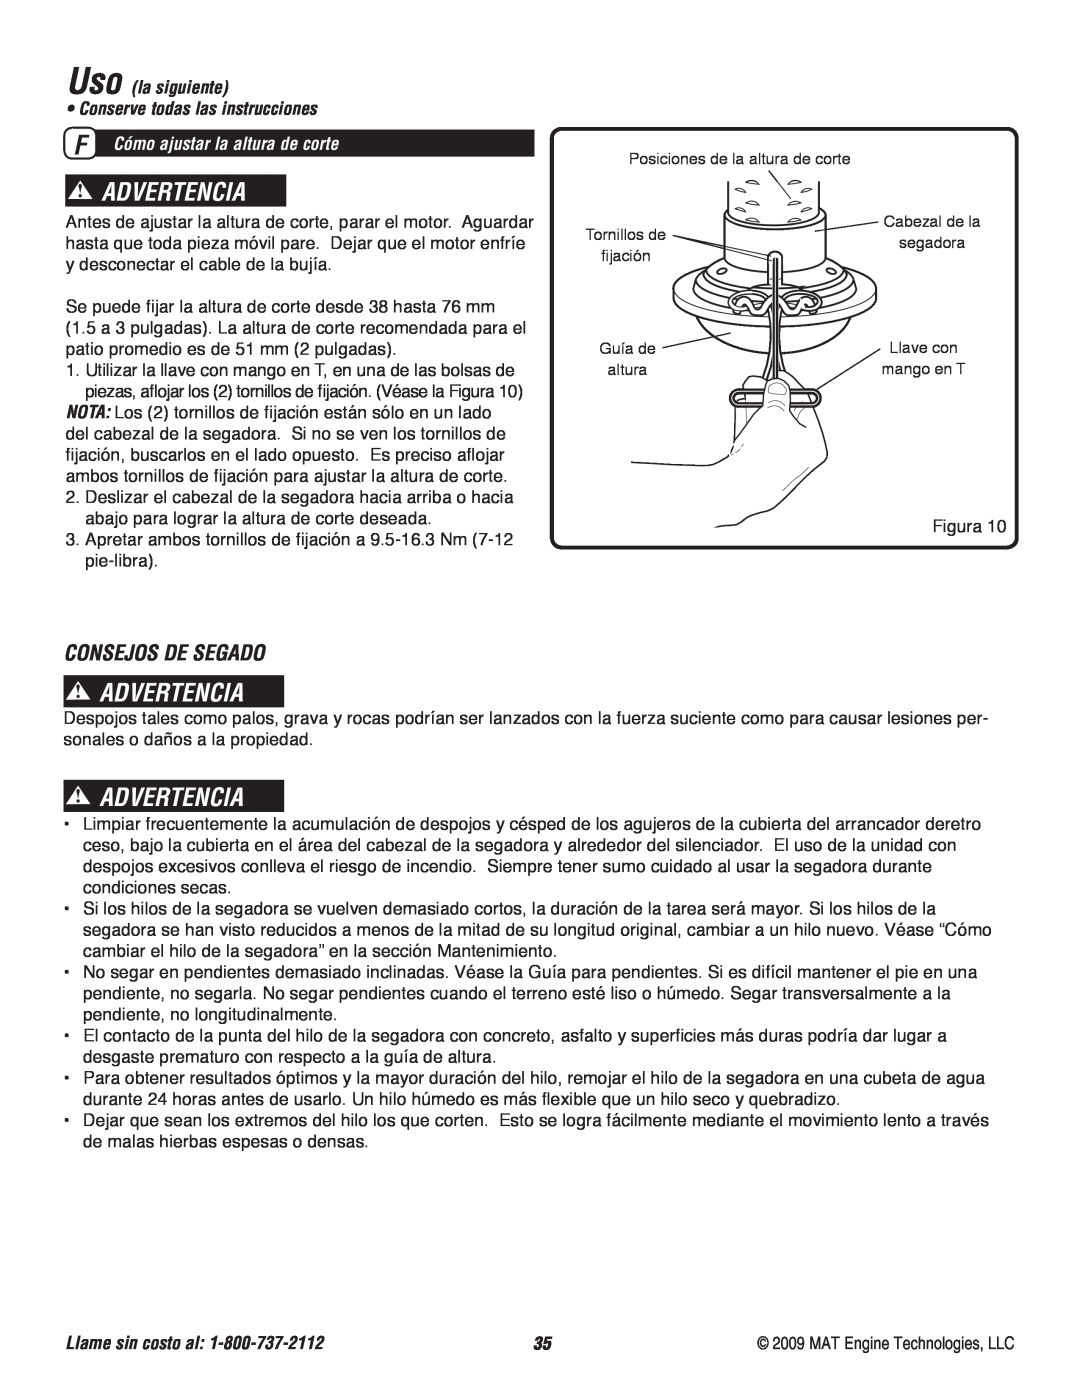 Powermate P-WFT-16022 specifications Consejos De Segado, Advertencia, Uso la siguiente, Llame sin costo al 